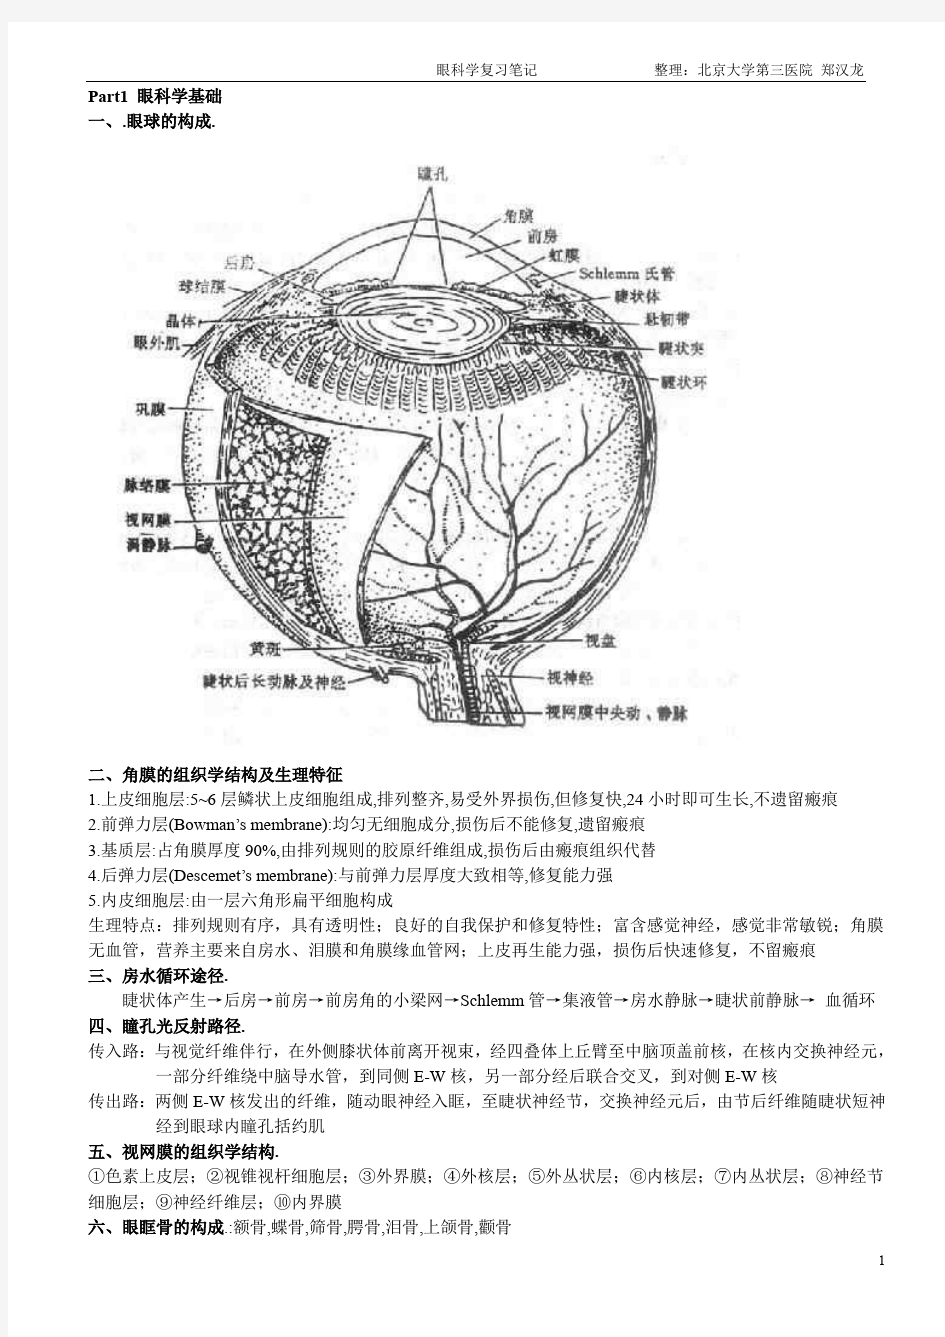 眼科学复习笔记 1.0版--郑汉龙